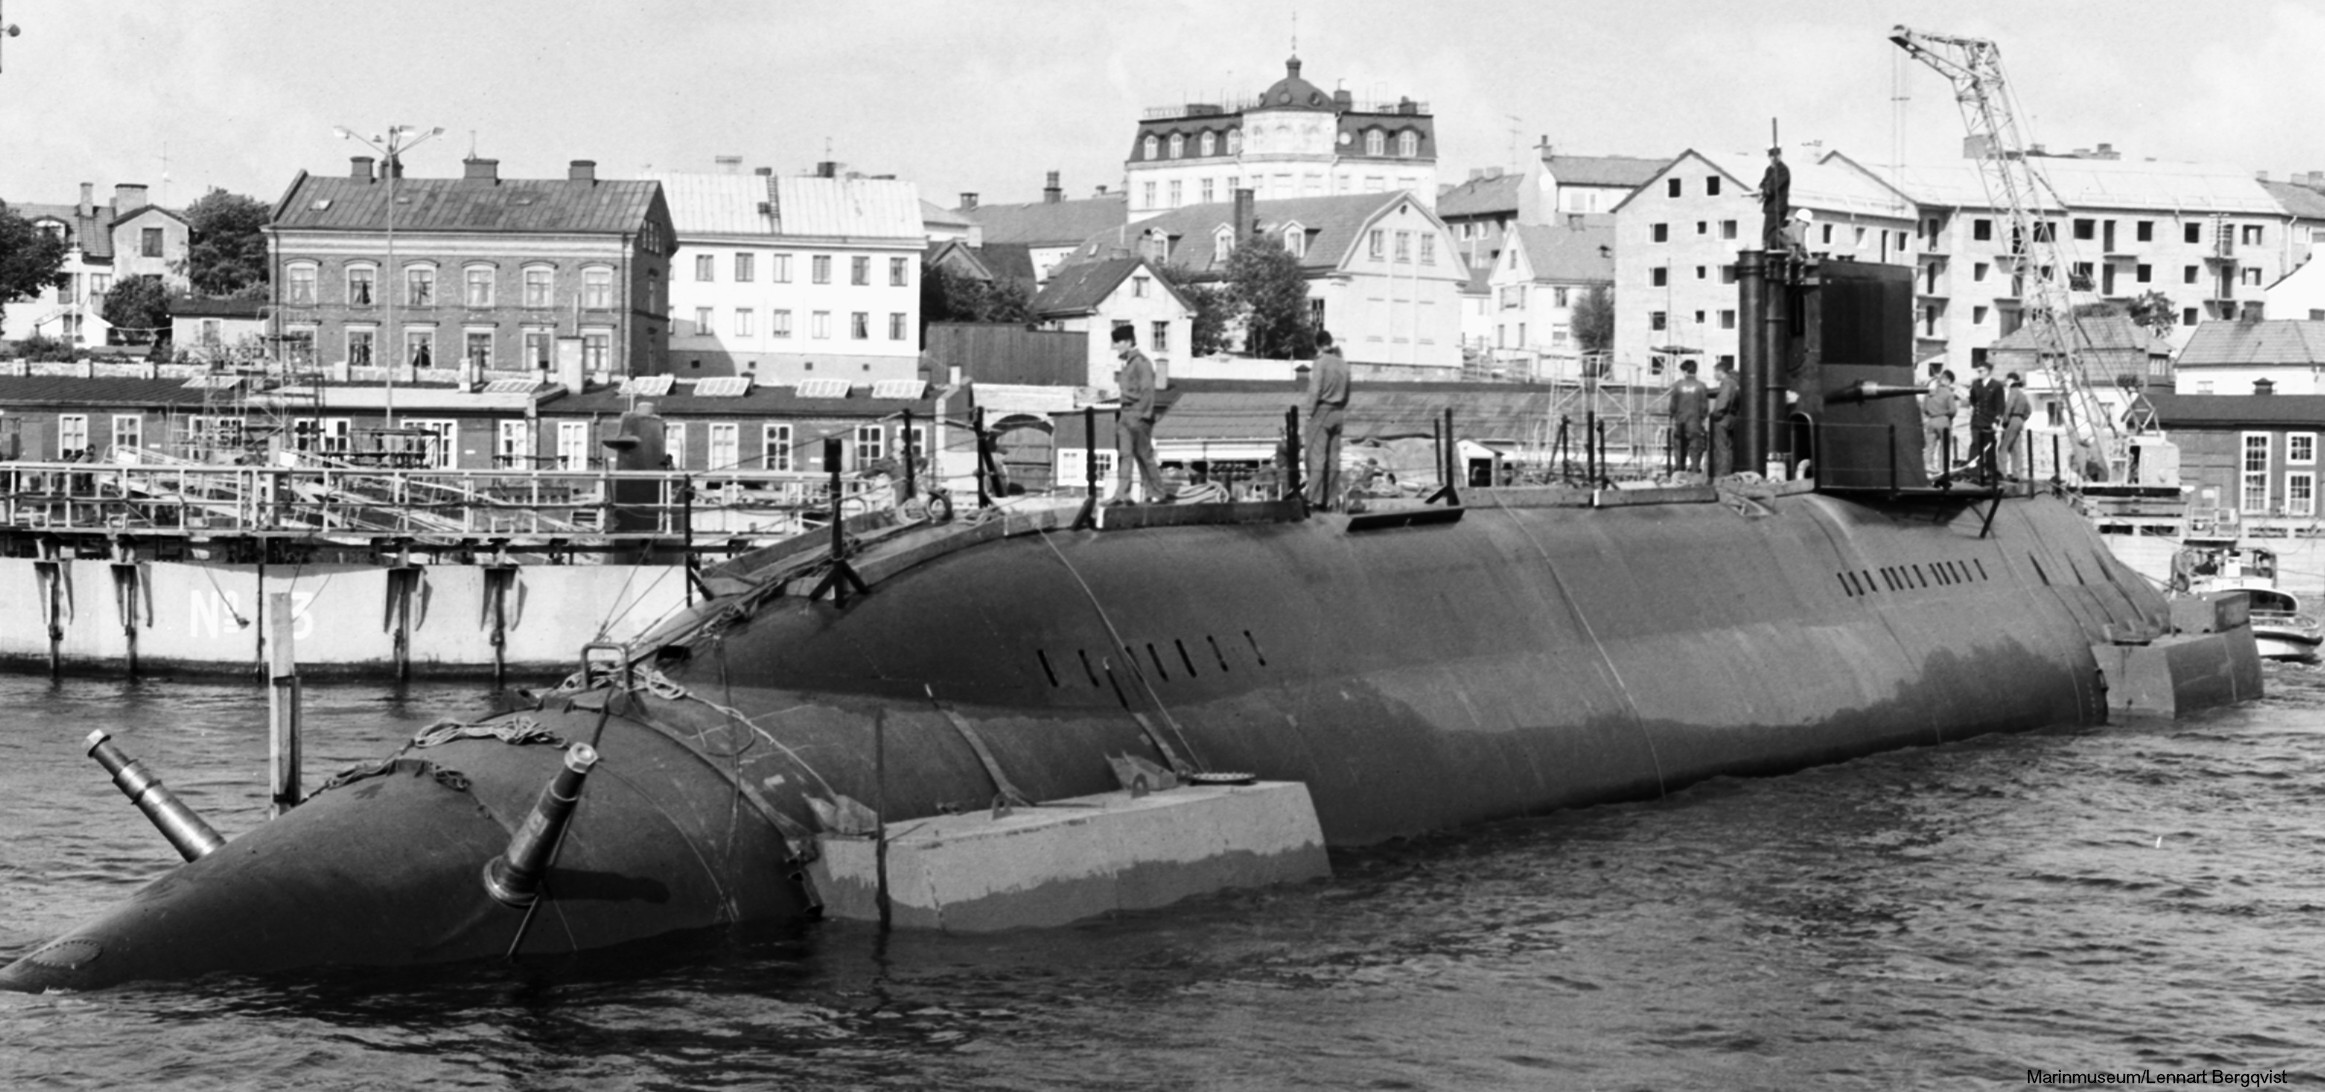 hswms hms sjöhästen shä sjöormen a11 class submarine ssk swedish navy svenska marinen försvarsmakten 16